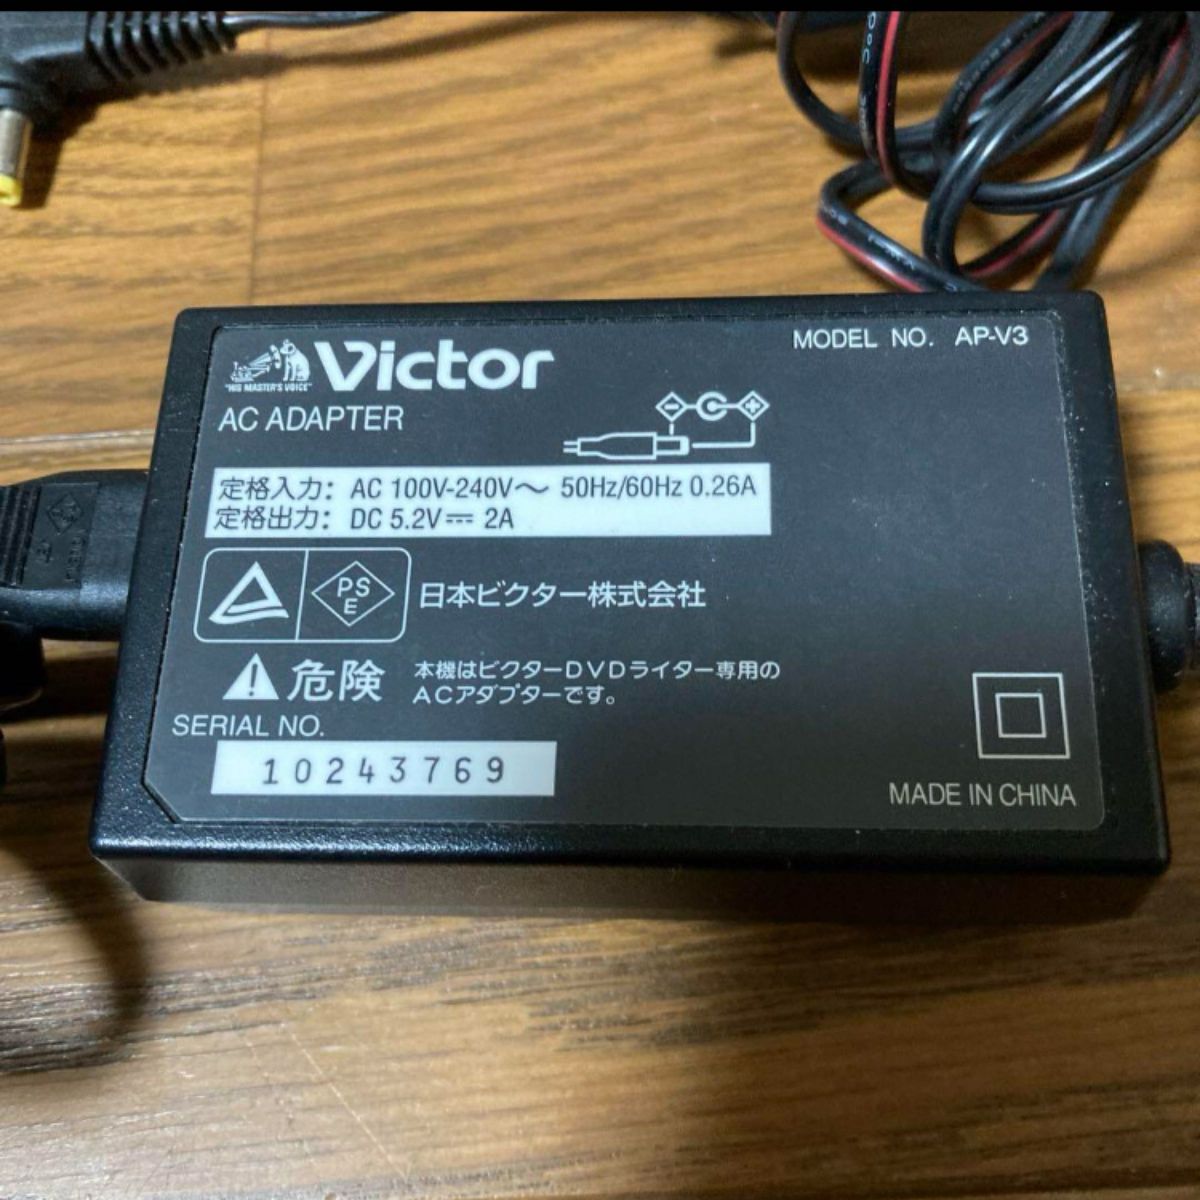 ビクター エブリオ専用DVDライター CU-VD3用 AC電源アダプタAP-V3